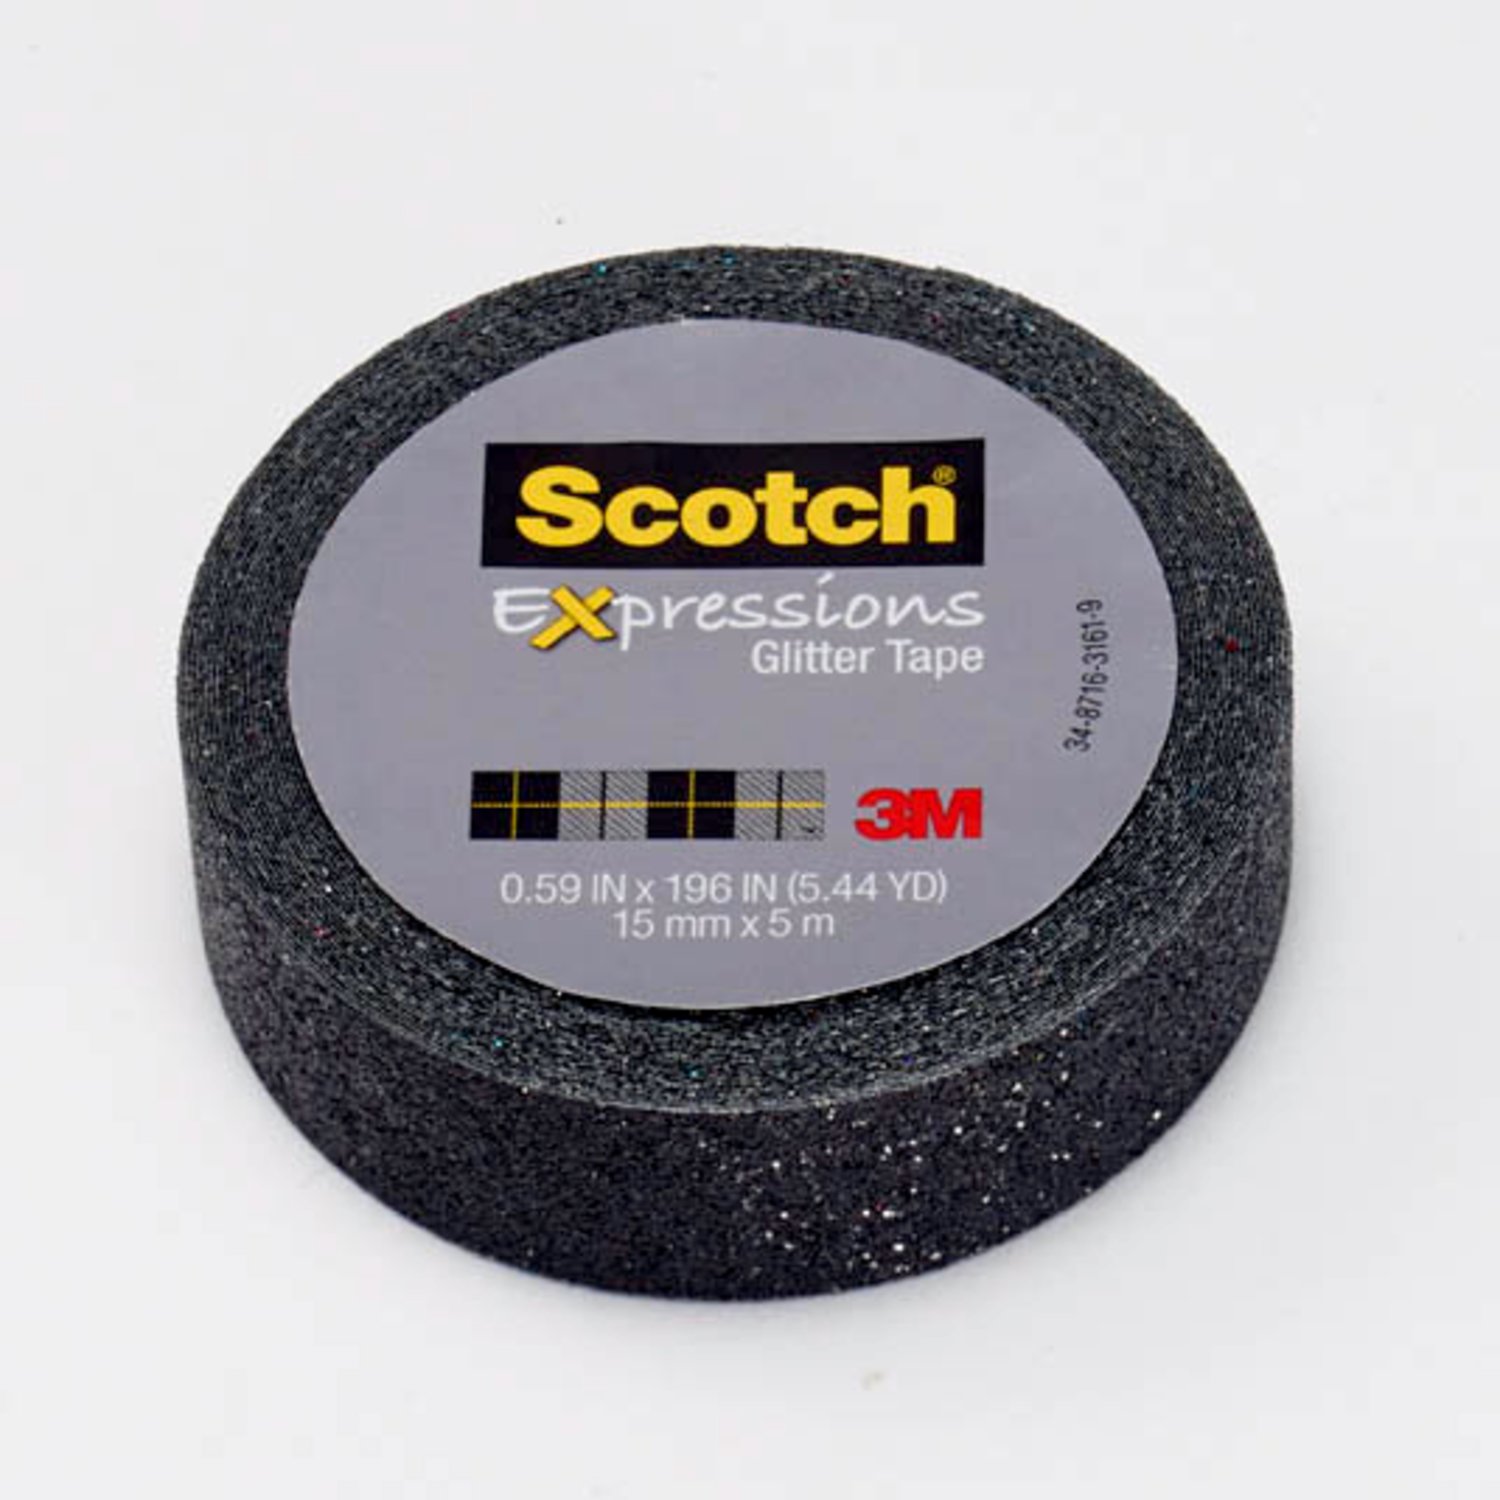 7100067682 - Scotch Expressions Glitter Tape C514-BLK, .59 in x 196 in (15 mm x 5 m)
Black Glitter